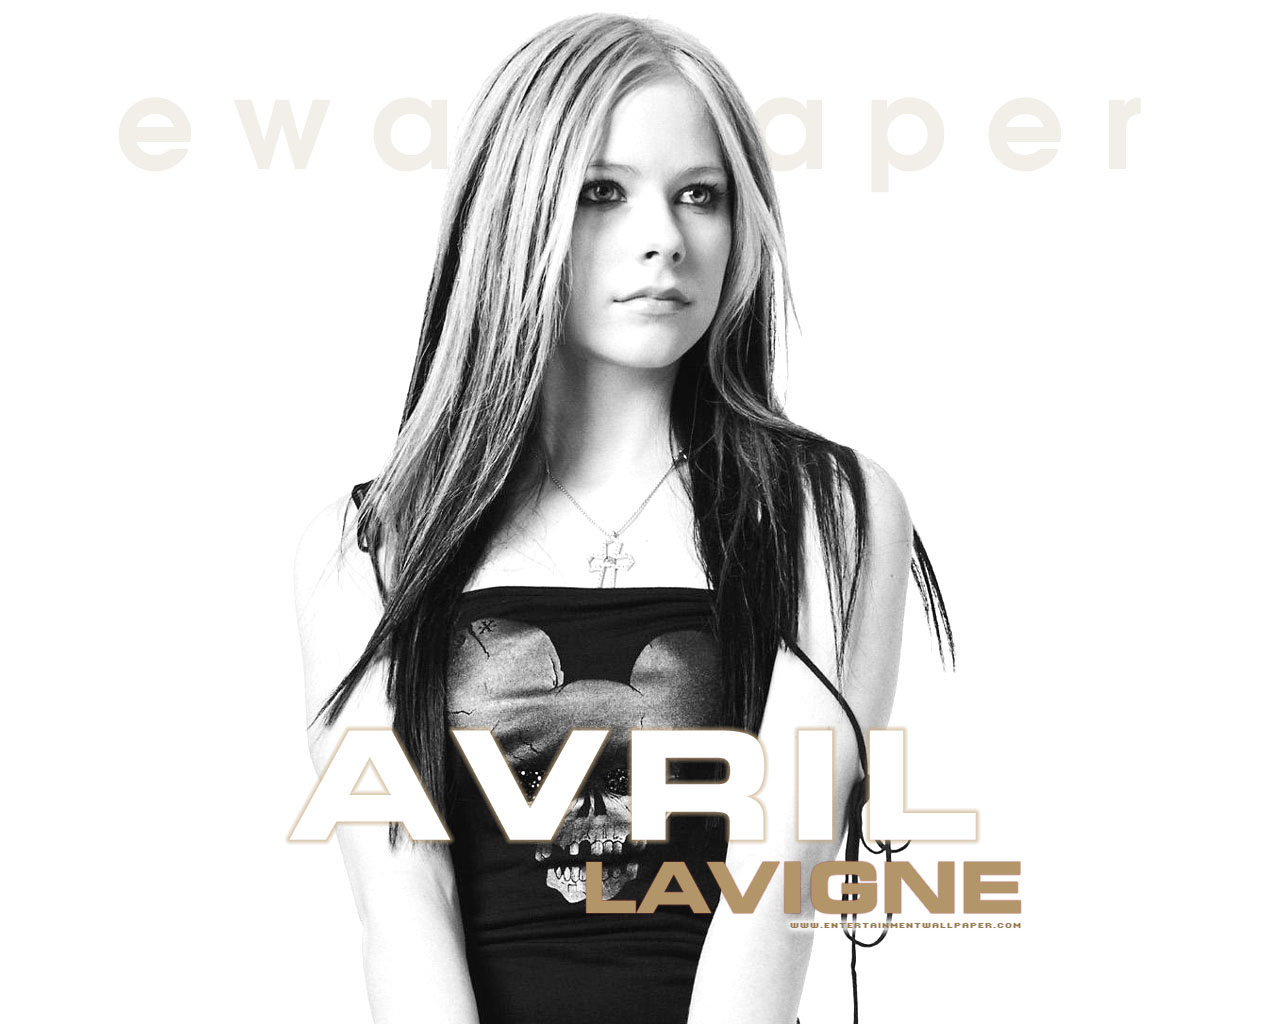 http://images1.fanpop.com/images/image_uploads/Avril-Lavigne-avril-lavigne-827031_1280_1024.jpg